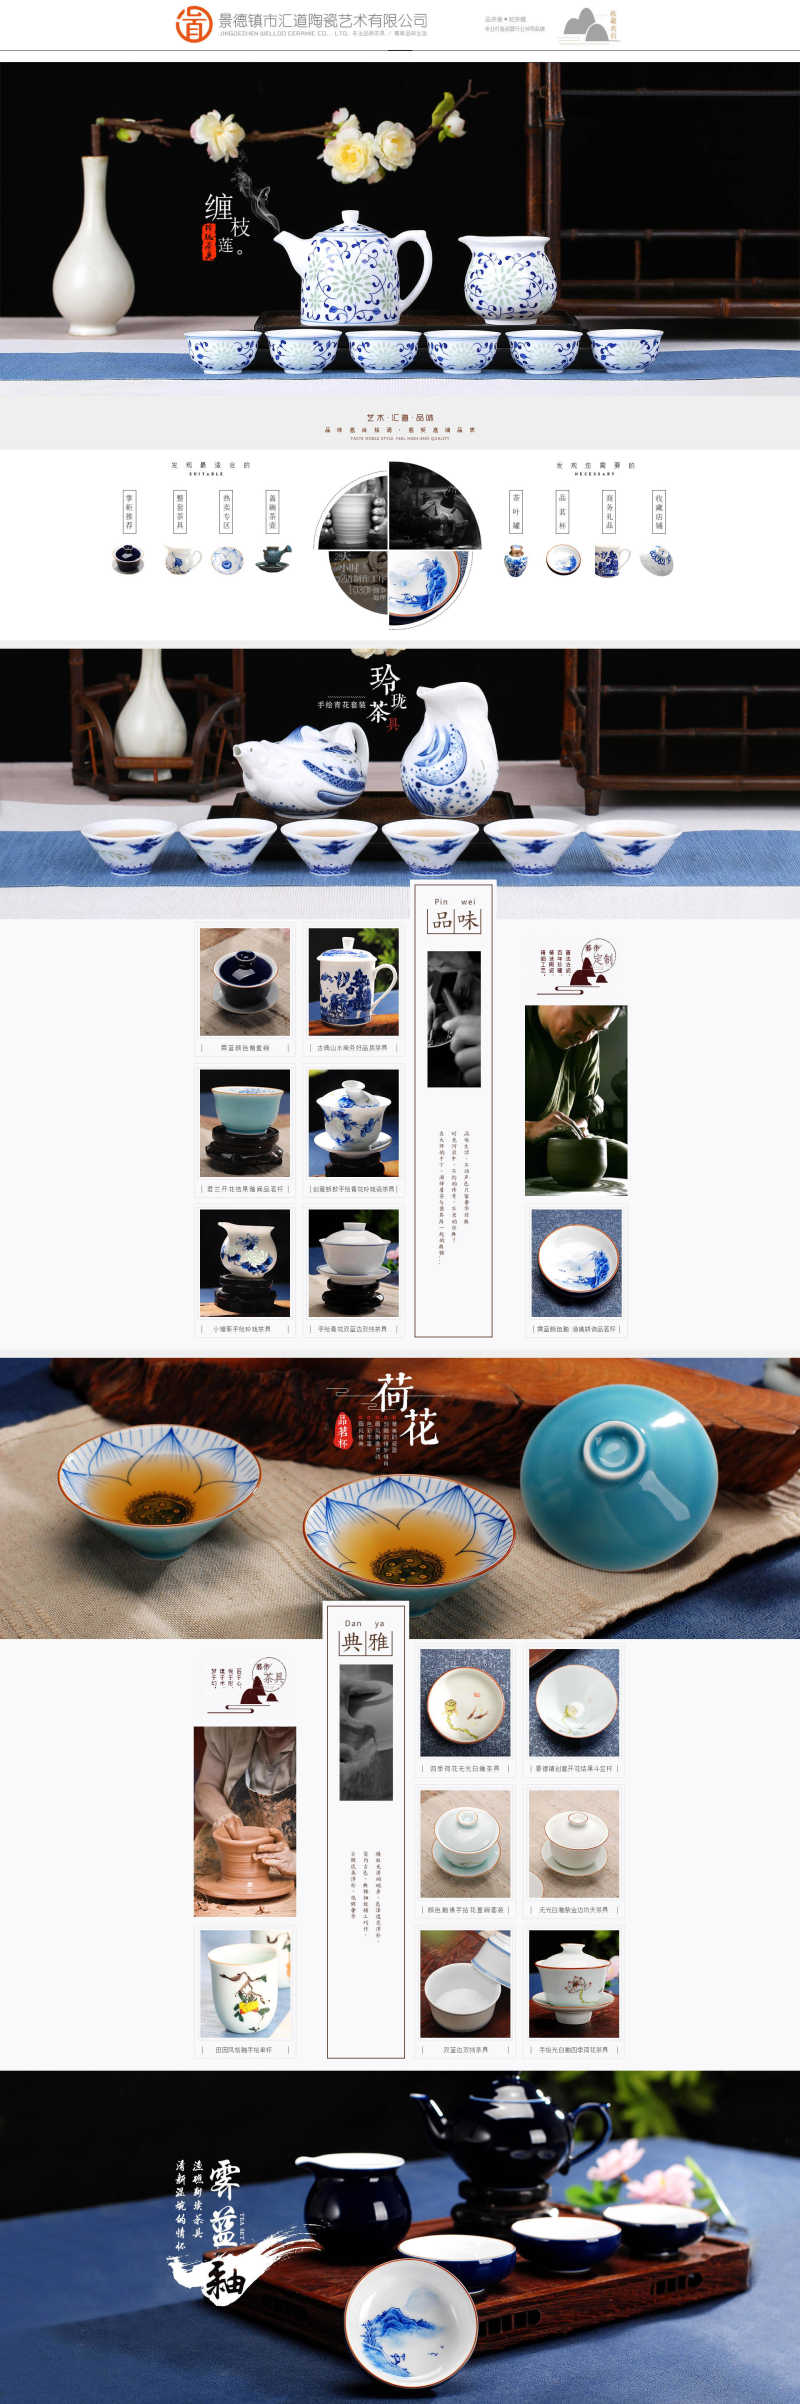 淘宝陶瓷茶具店铺装修模板